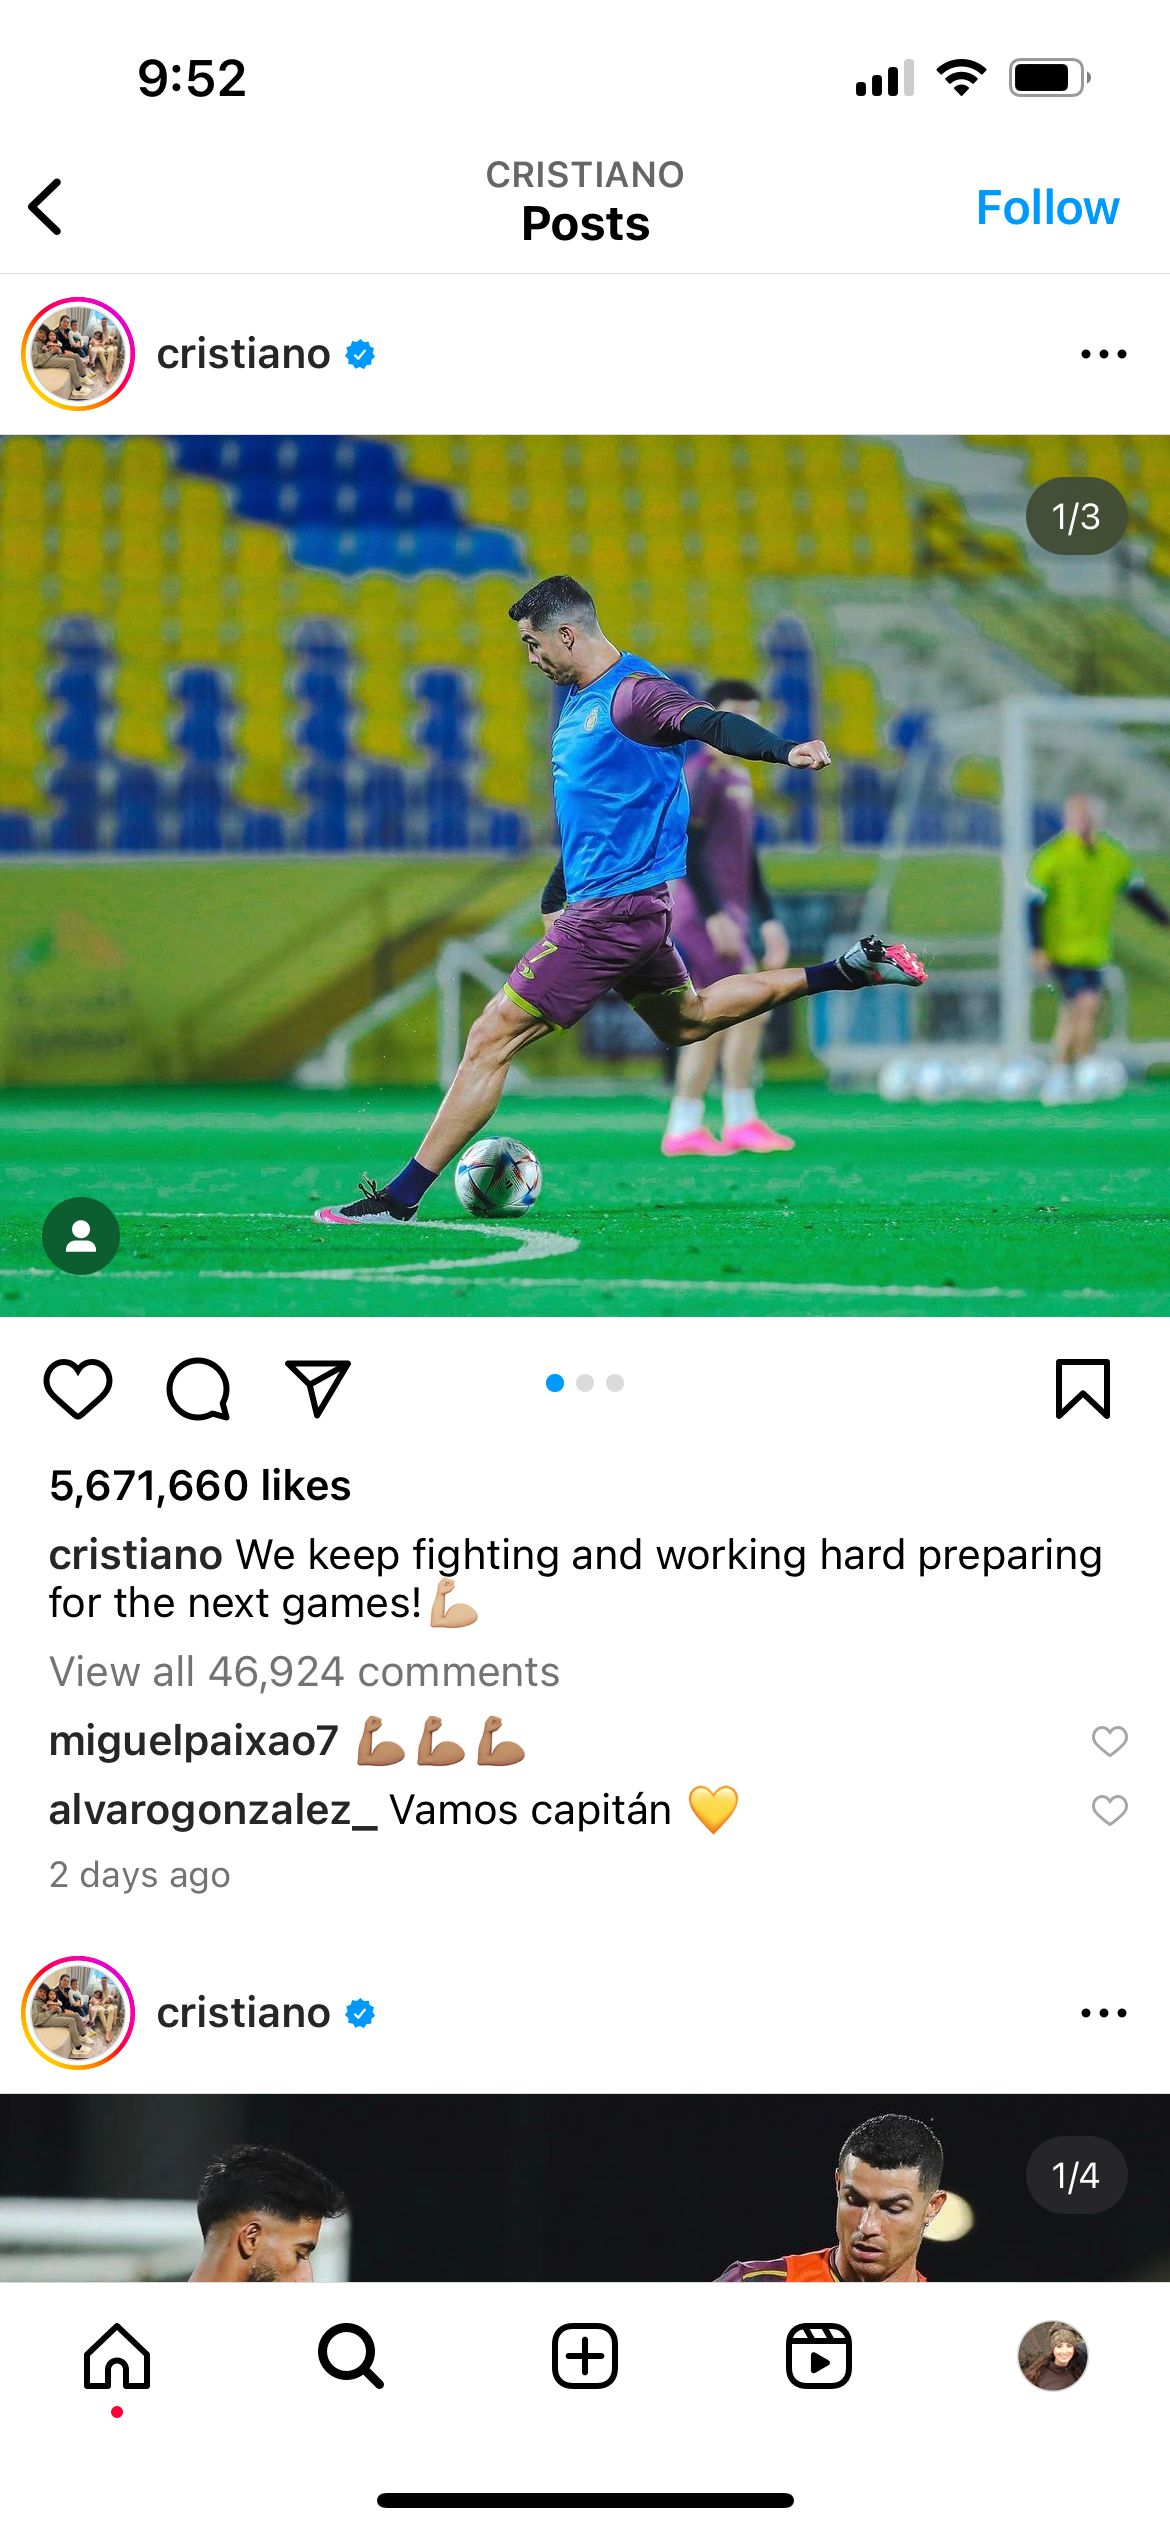 Captura de pantalla de Cristiano Ronaldo a punto de patear. Debajo de la foto dice “¡Seguimos peleando y trabajando duro para prepararnos para los siguientes partidos!”